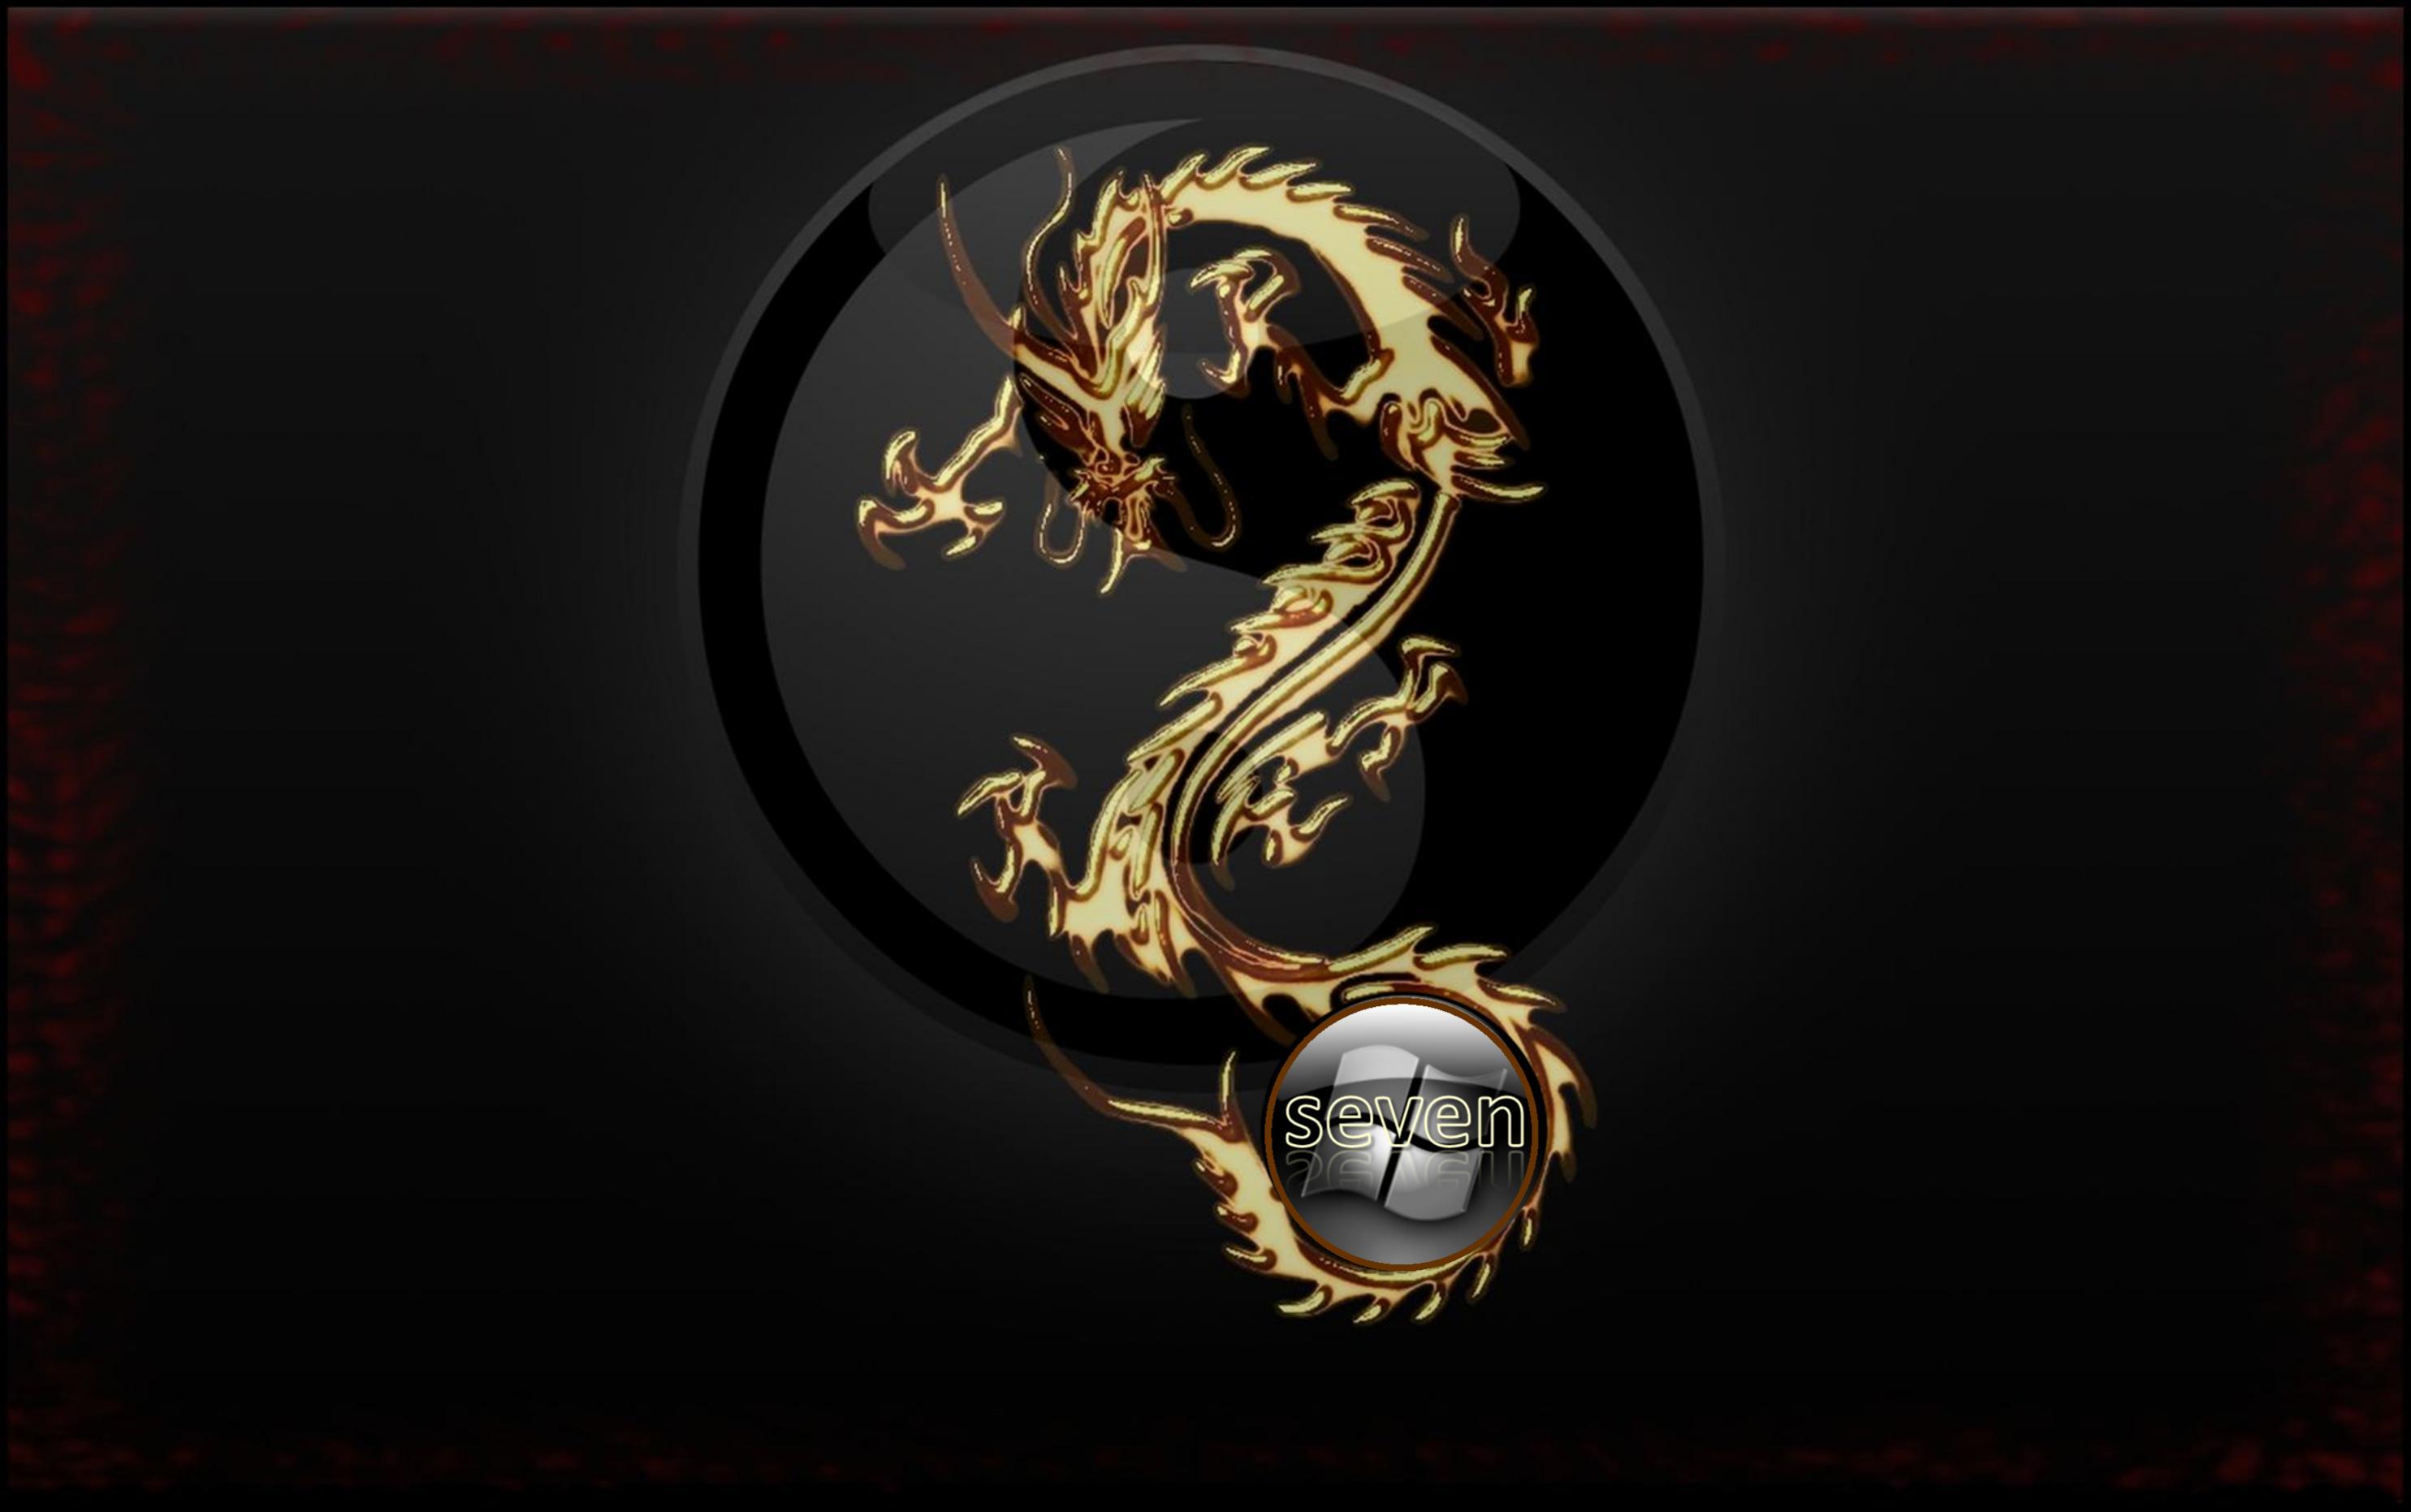 Dragon Desktop Wallpaper